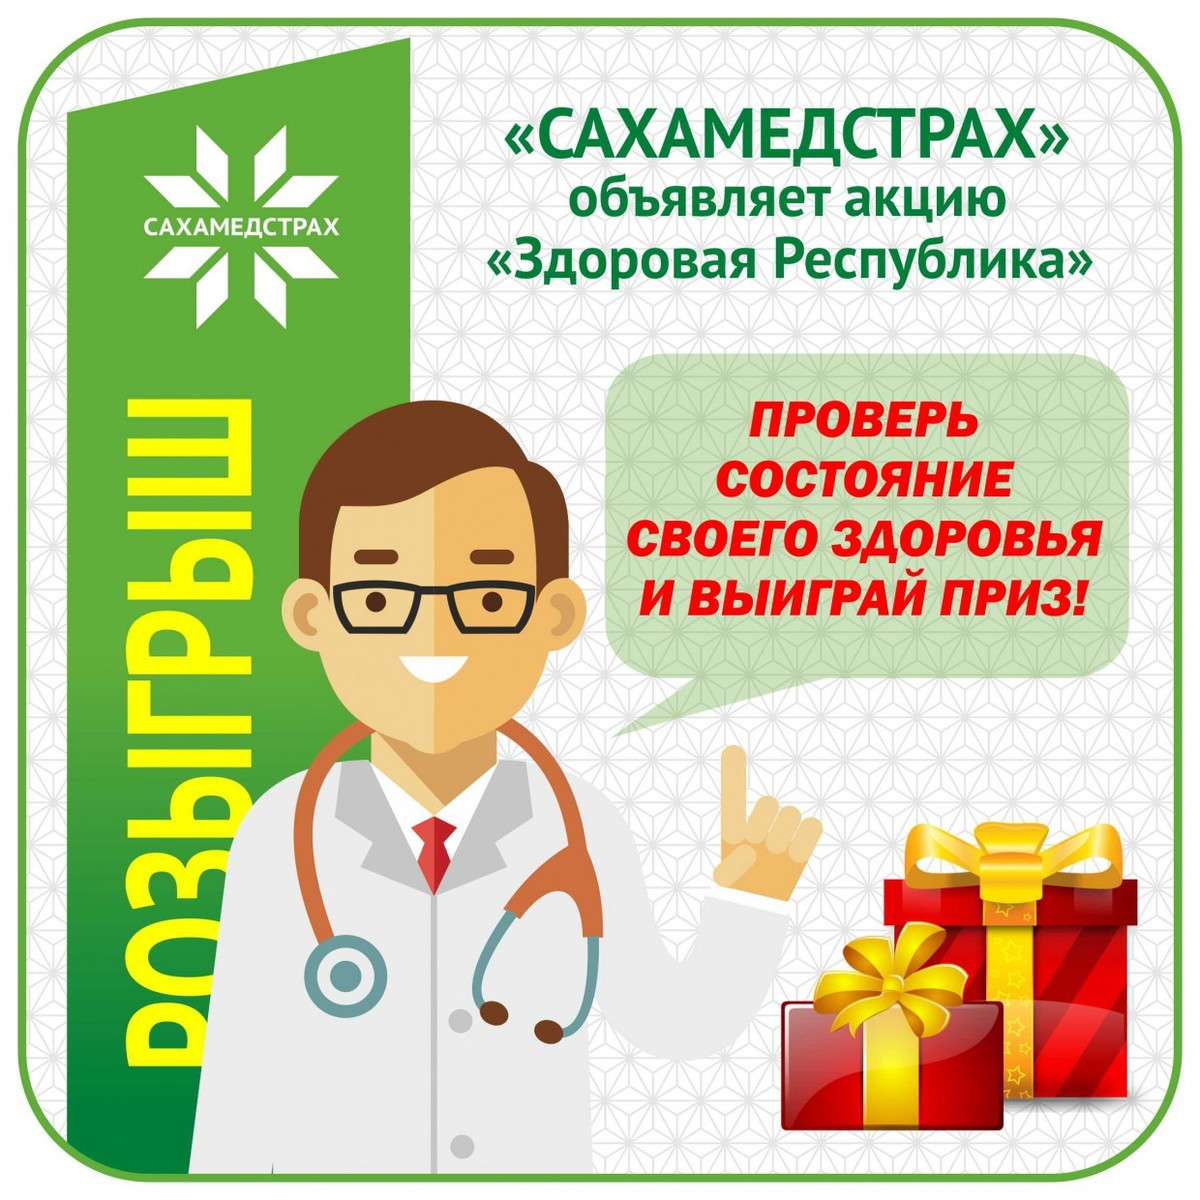 Компания «Сахамедстрах» приглашает принять участие в Акции «Здоровая Республика»